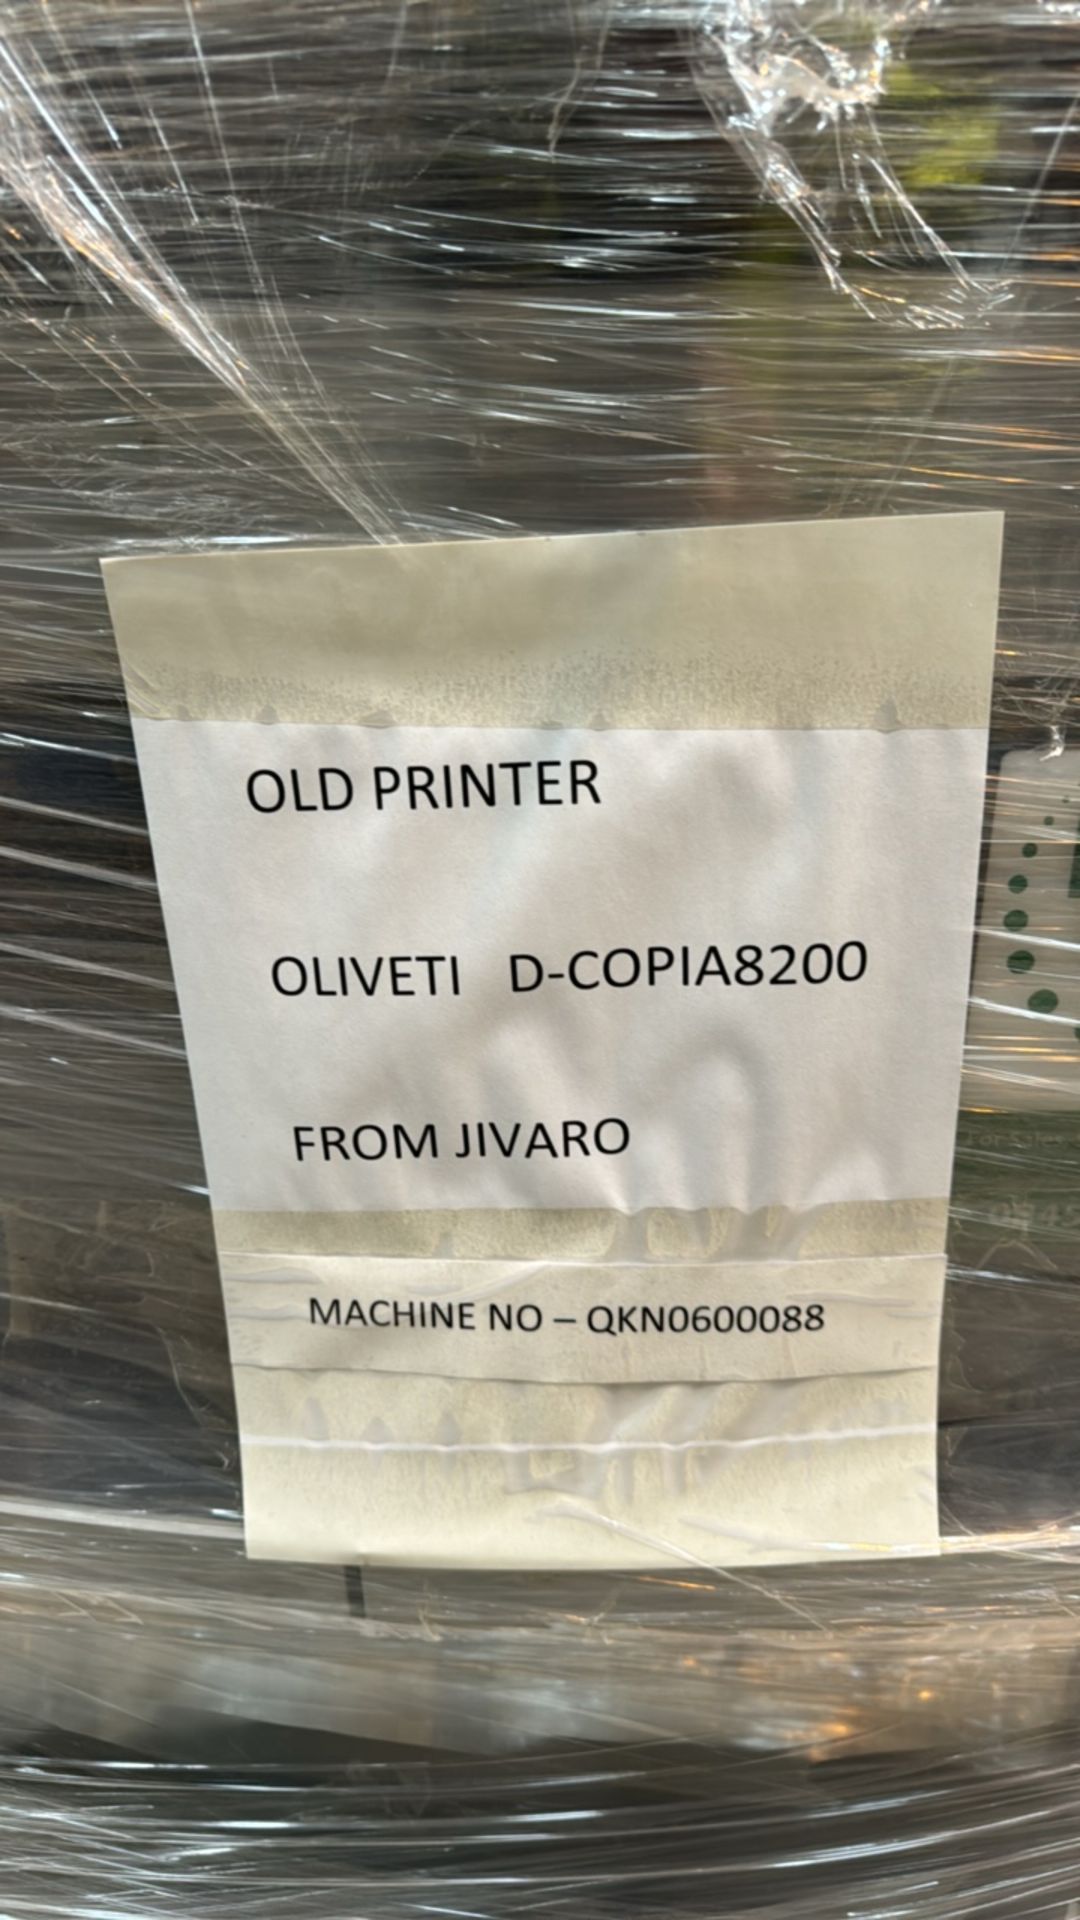 Oliveti D-Copia8200 - Image 3 of 6